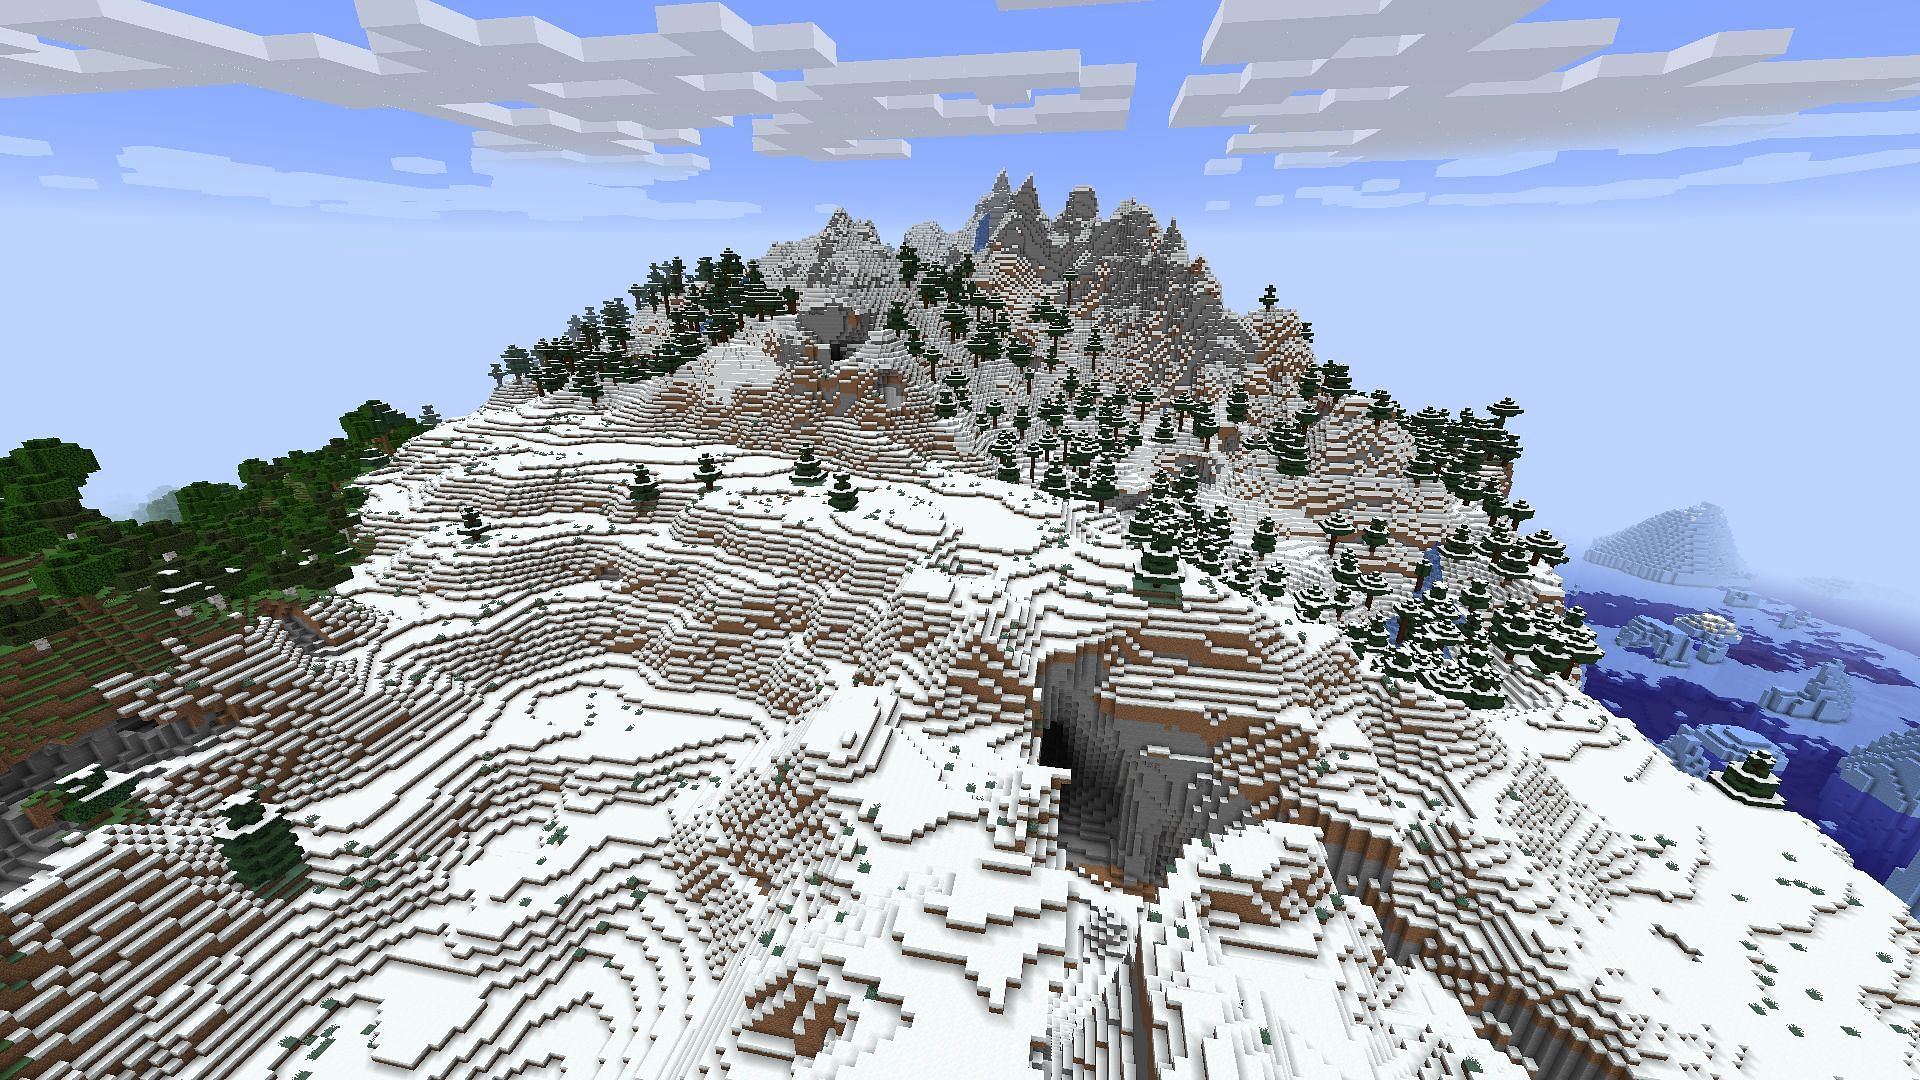 Jagged Peaks in Minecraft 1.18 (Image via Minecraft)